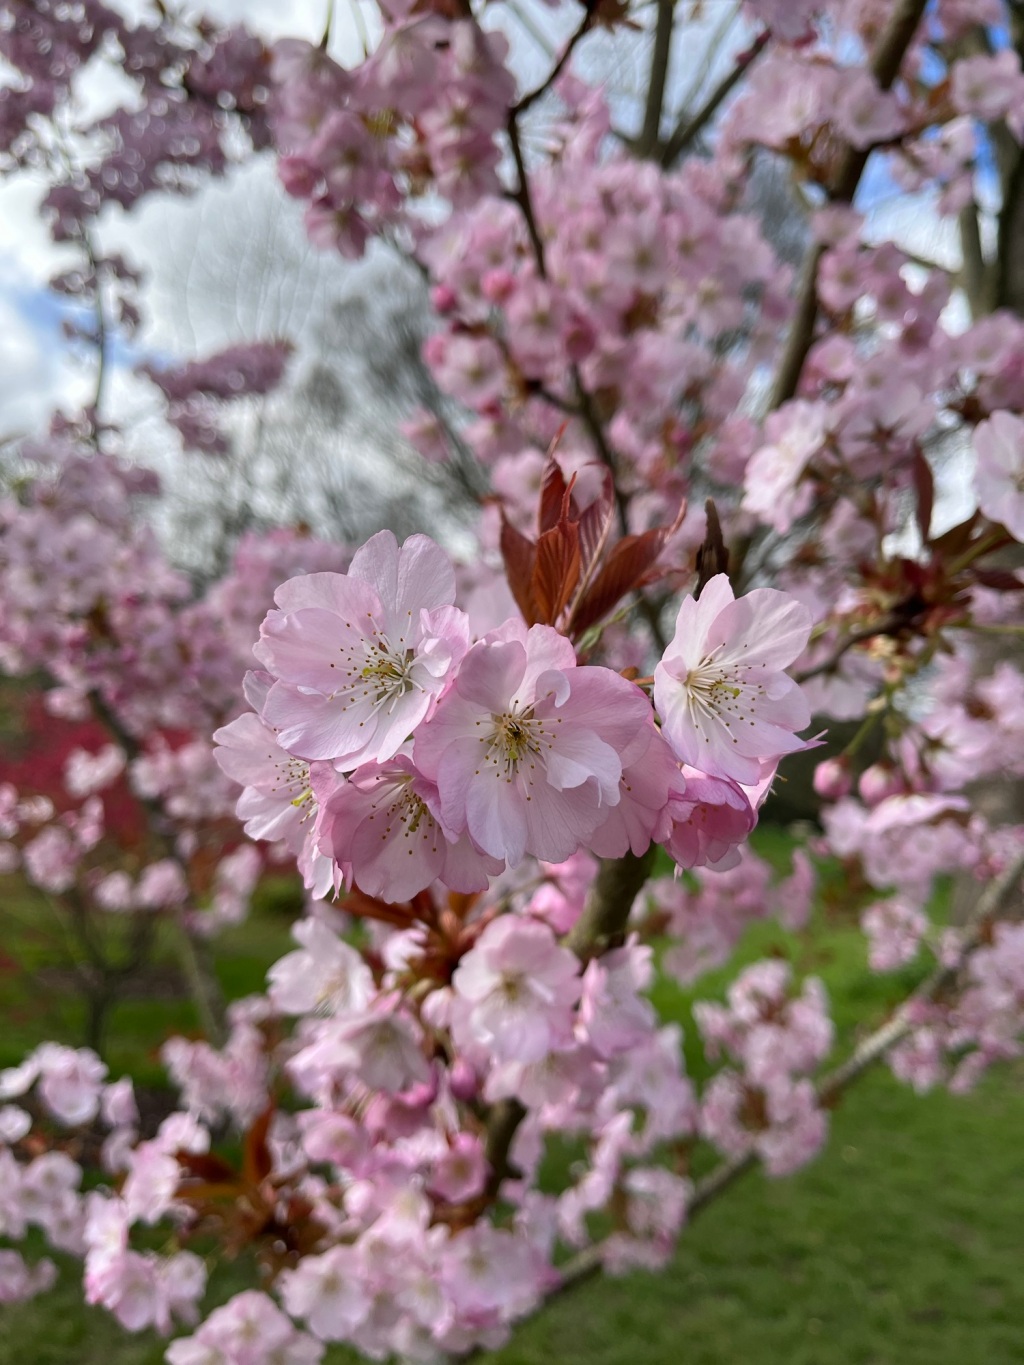 Spring has sprung at Kew Gardens